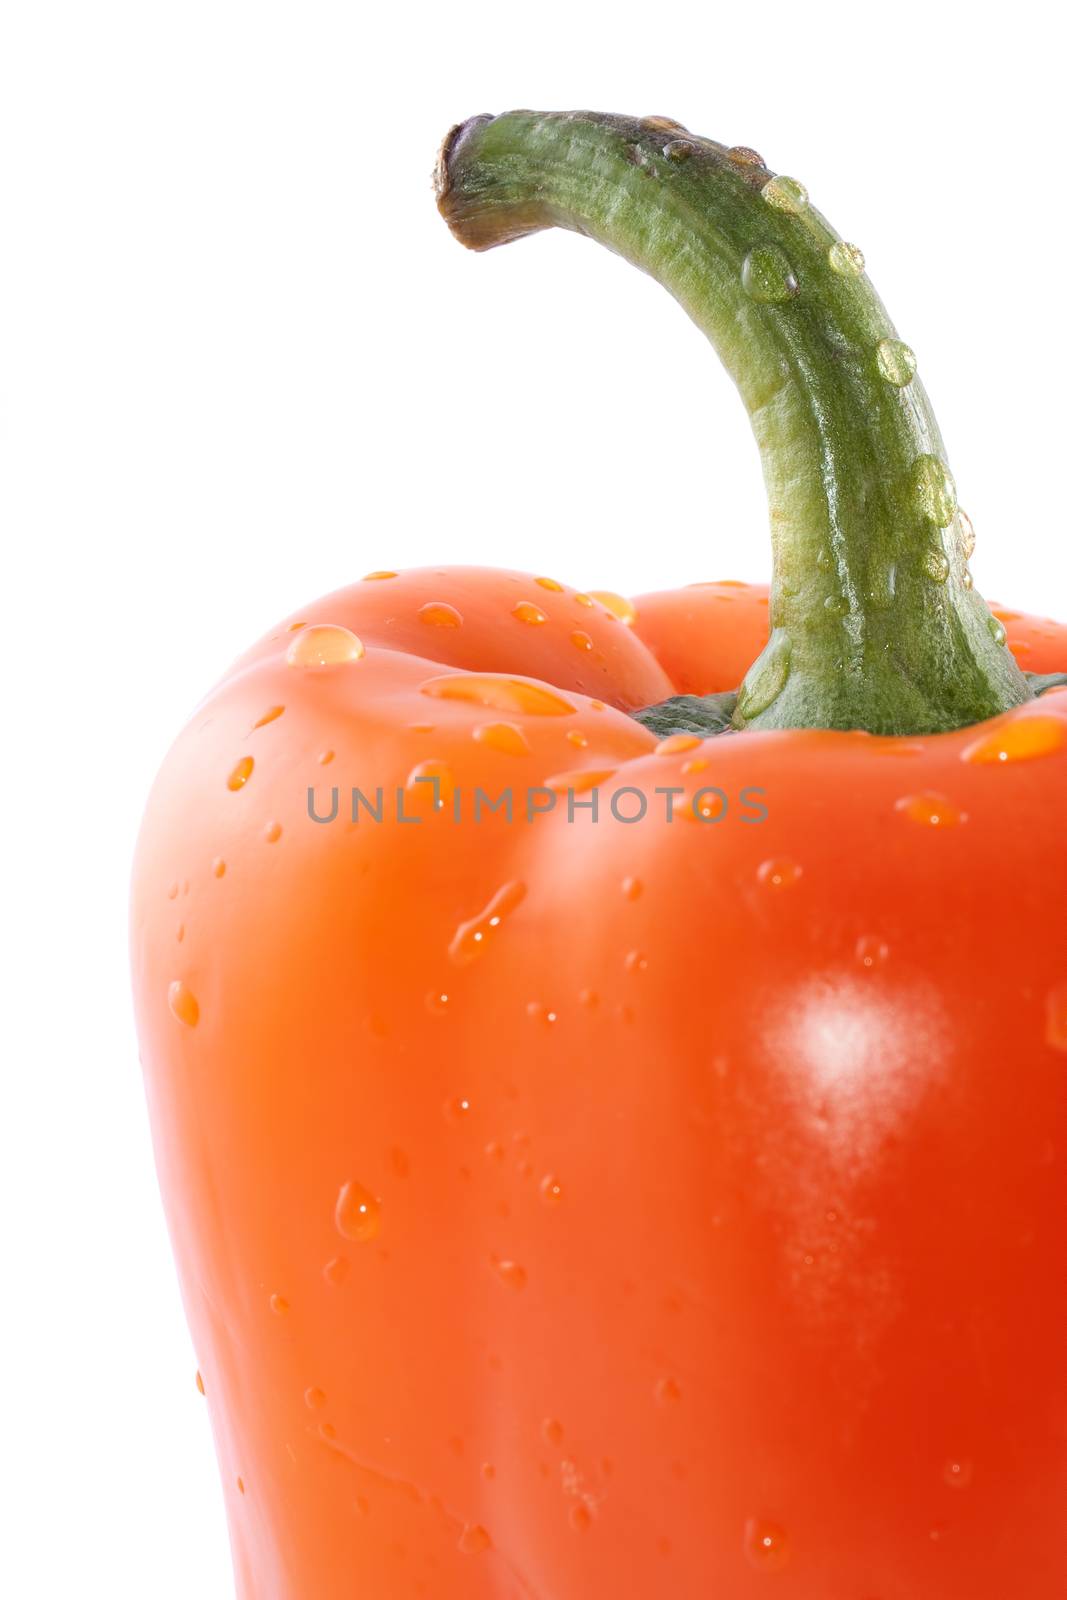 Juicy orange pepper by baronvsp